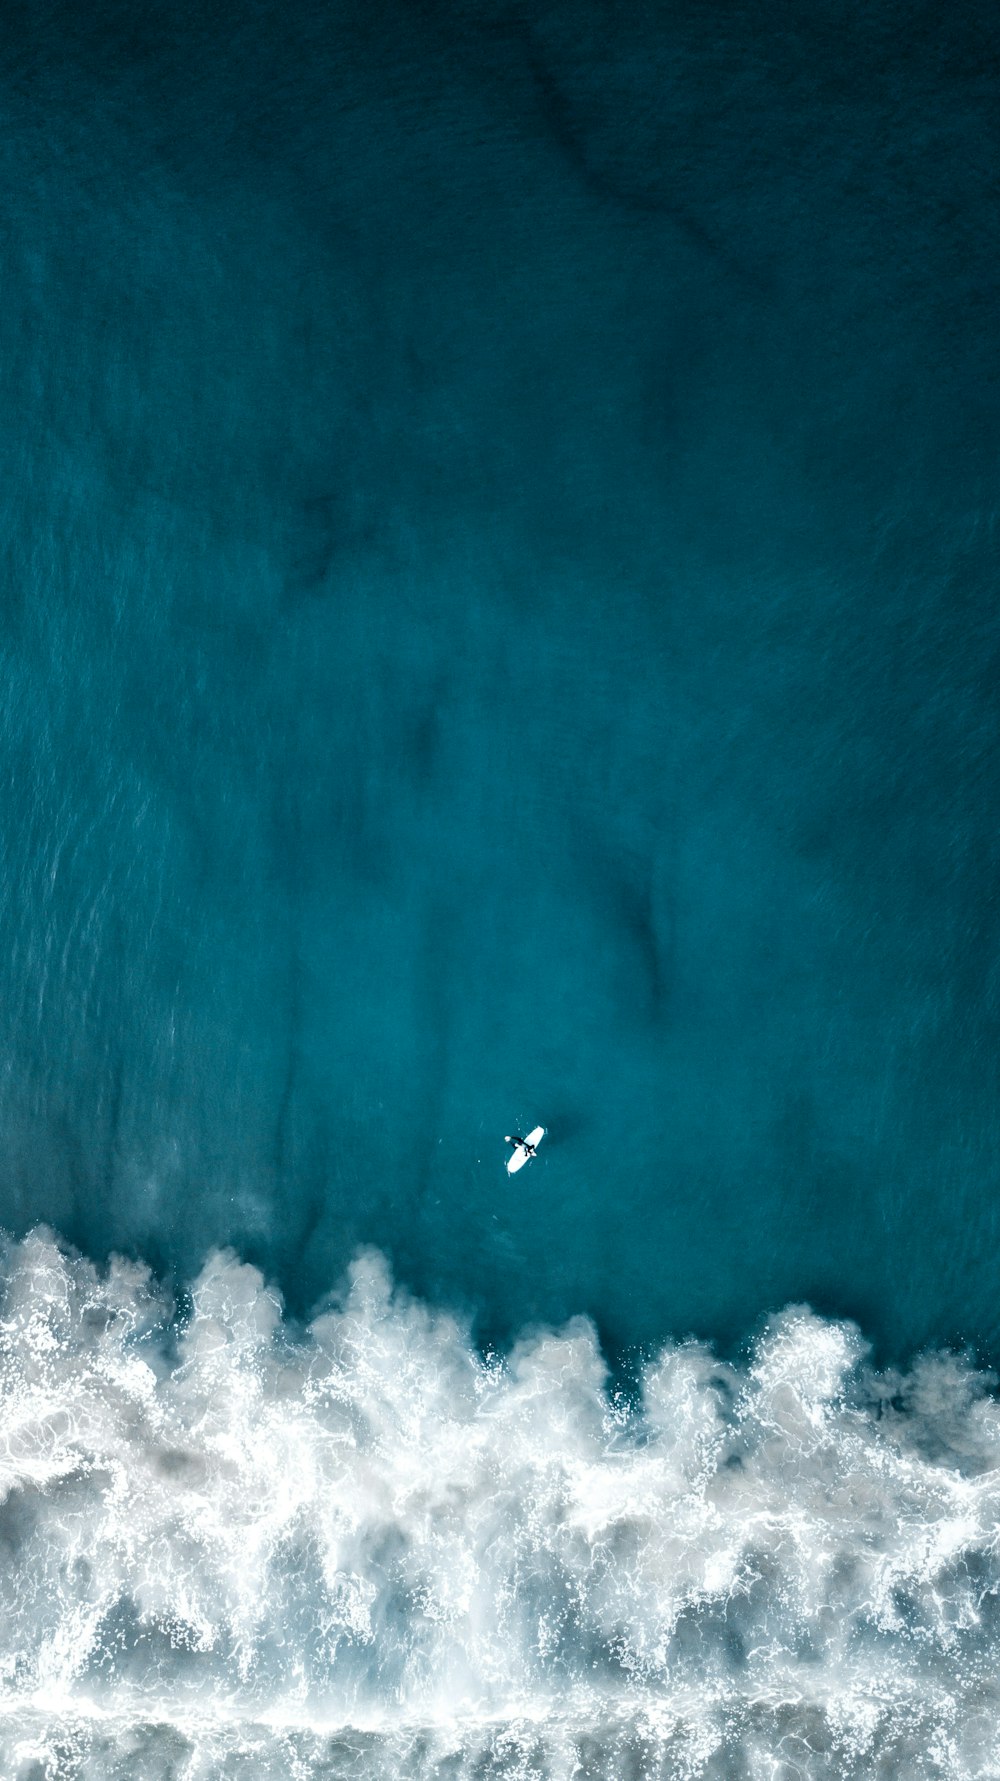 Eine Luftaufnahme eines Surfers, der auf einer Welle reitet